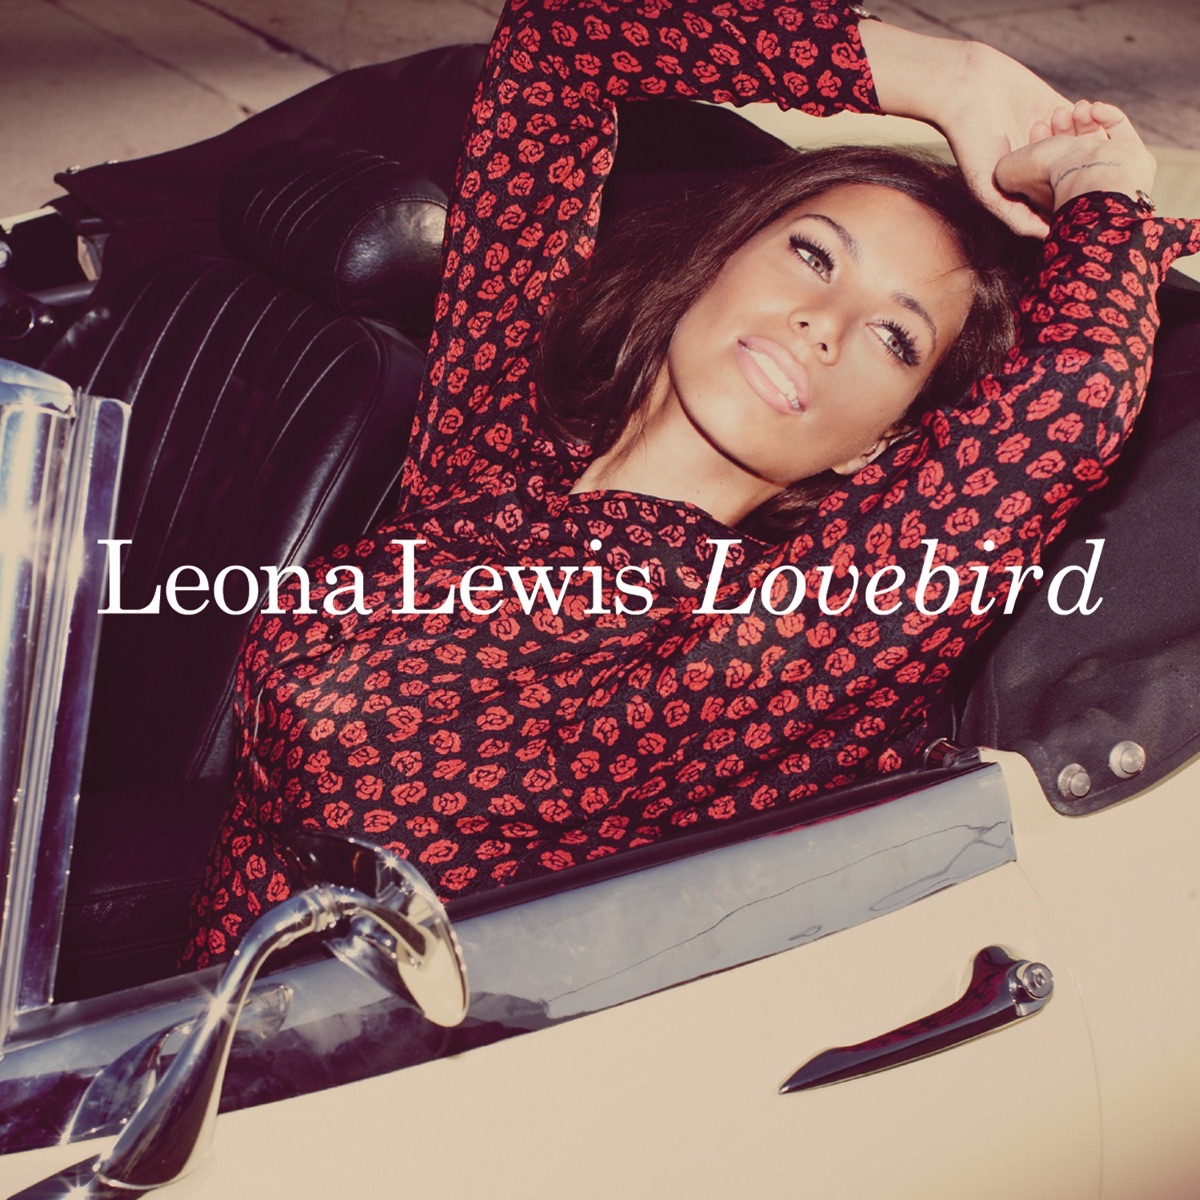 leona_lewis-lovebird_s.jpg?732848